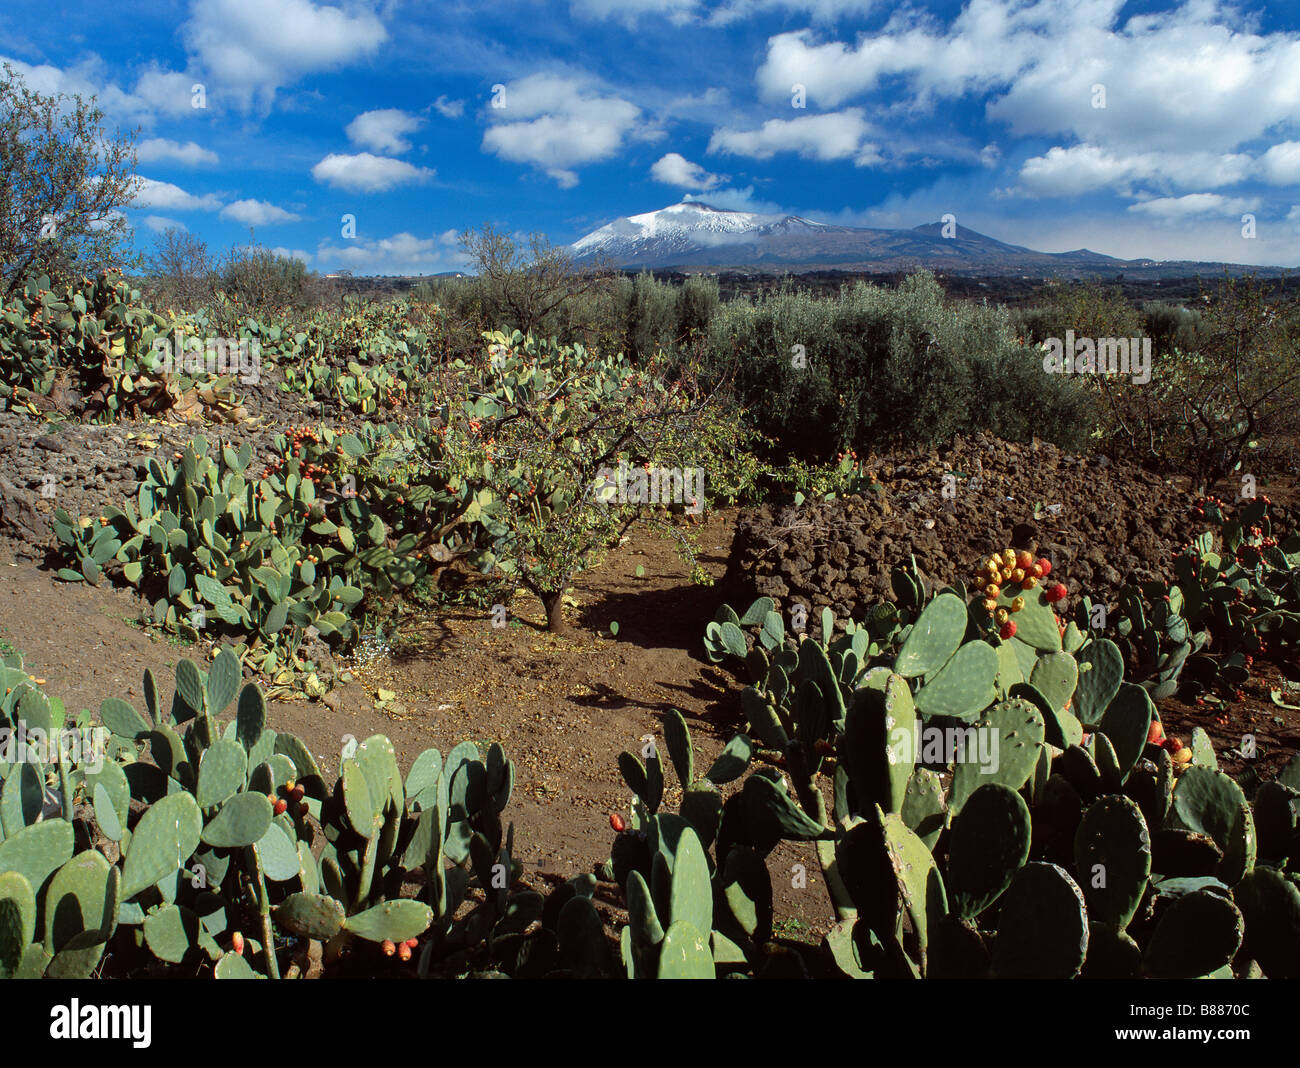 El monte Etna, Sicilia, Italia, domina un paisaje cubierto de cactus de pera espinosa (Opuntia) que llevan fruto Foto de stock